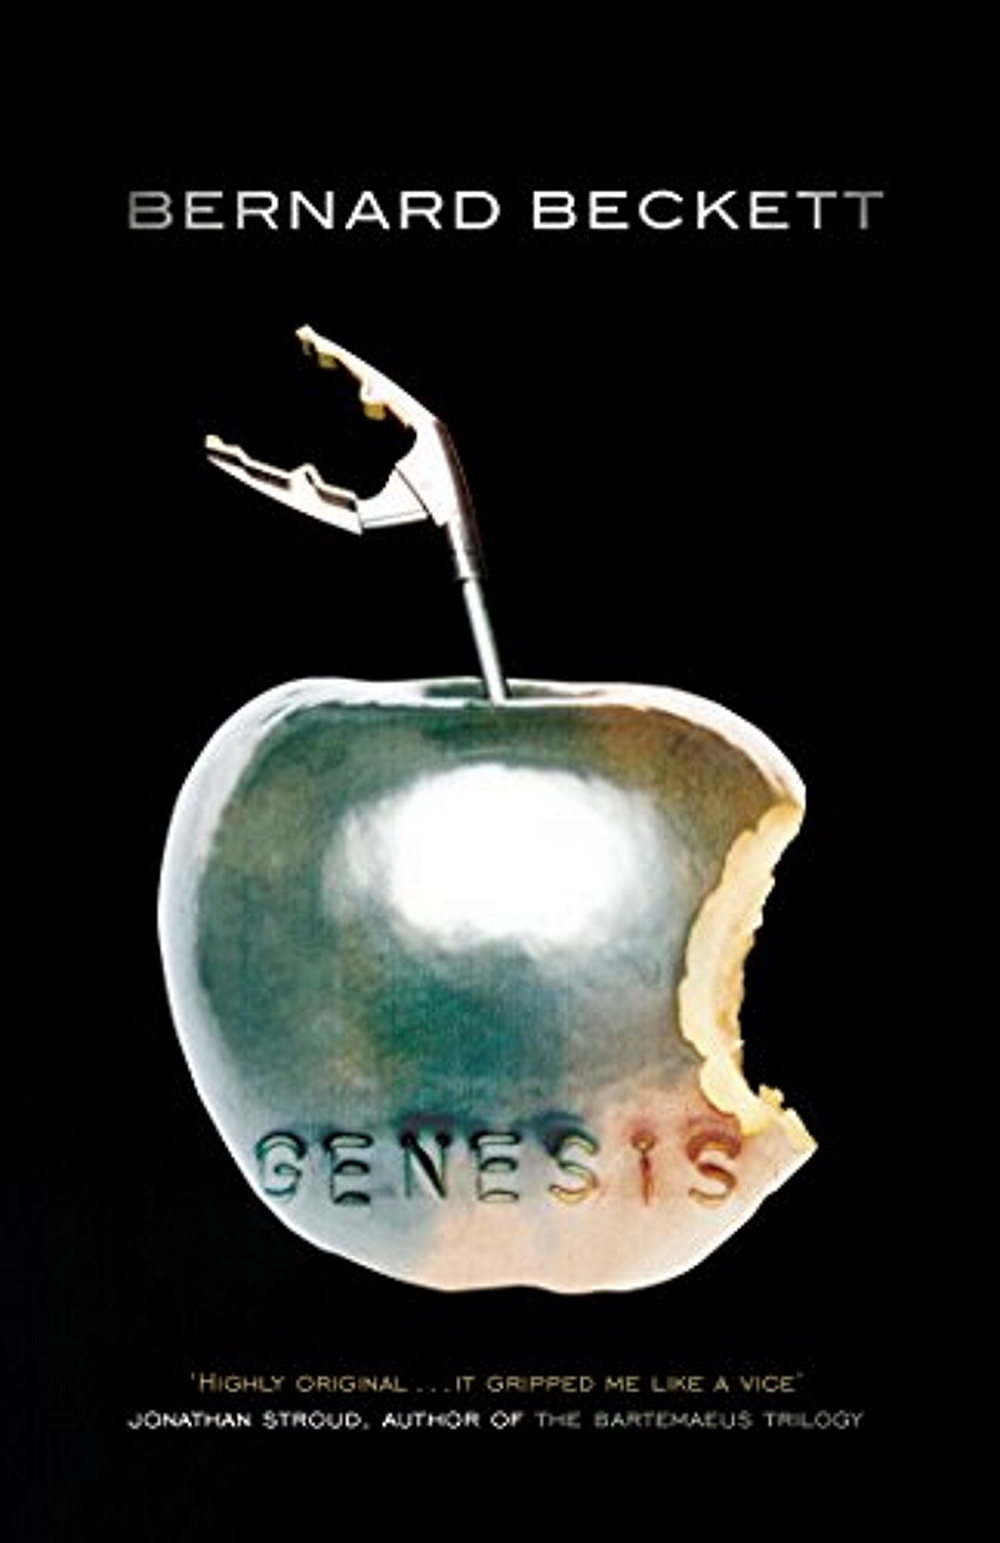 Cover des Buches "Genesis" von Bernard Beckett